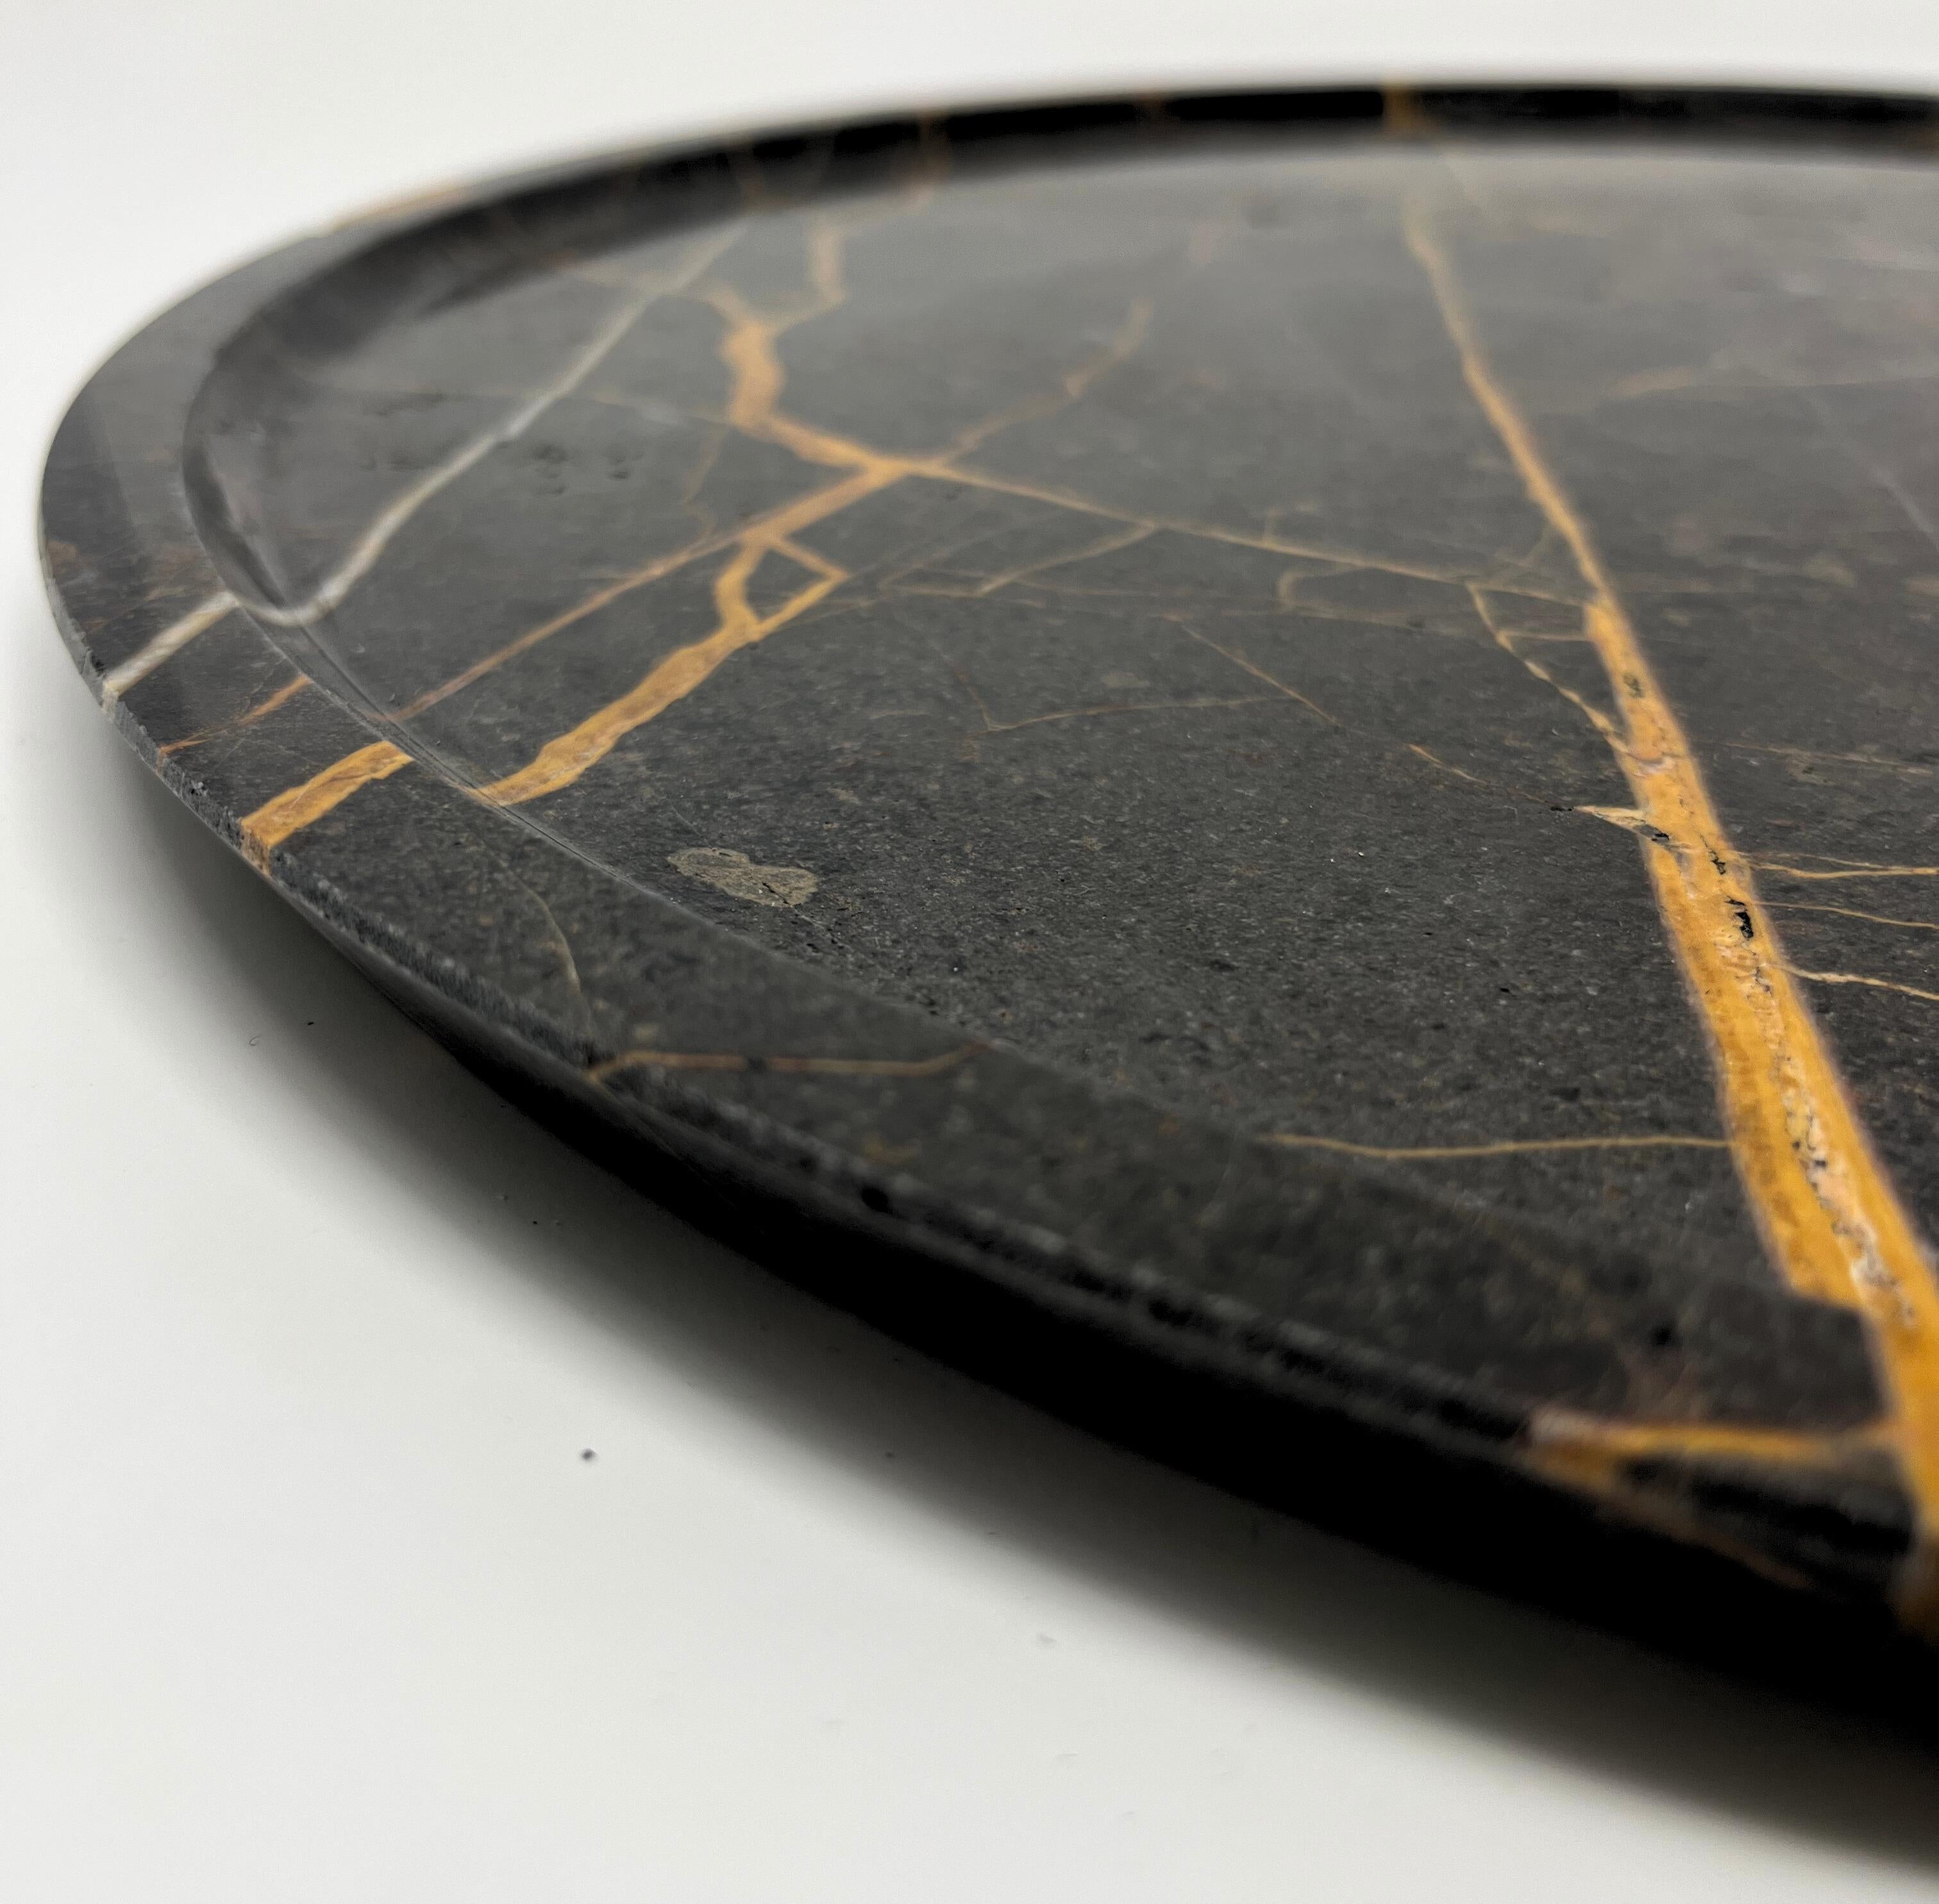 Das Terra-Tablett aus Port Saint Laurent-Marmor kann als fantastischer Tafelaufsatz für eine Vase oder als Ablagefläche für Gegenstände verwendet werden, die oft in den verschiedenen Räumen unserer Wohnung verstreut sind. 

Außerdem können Sie damit